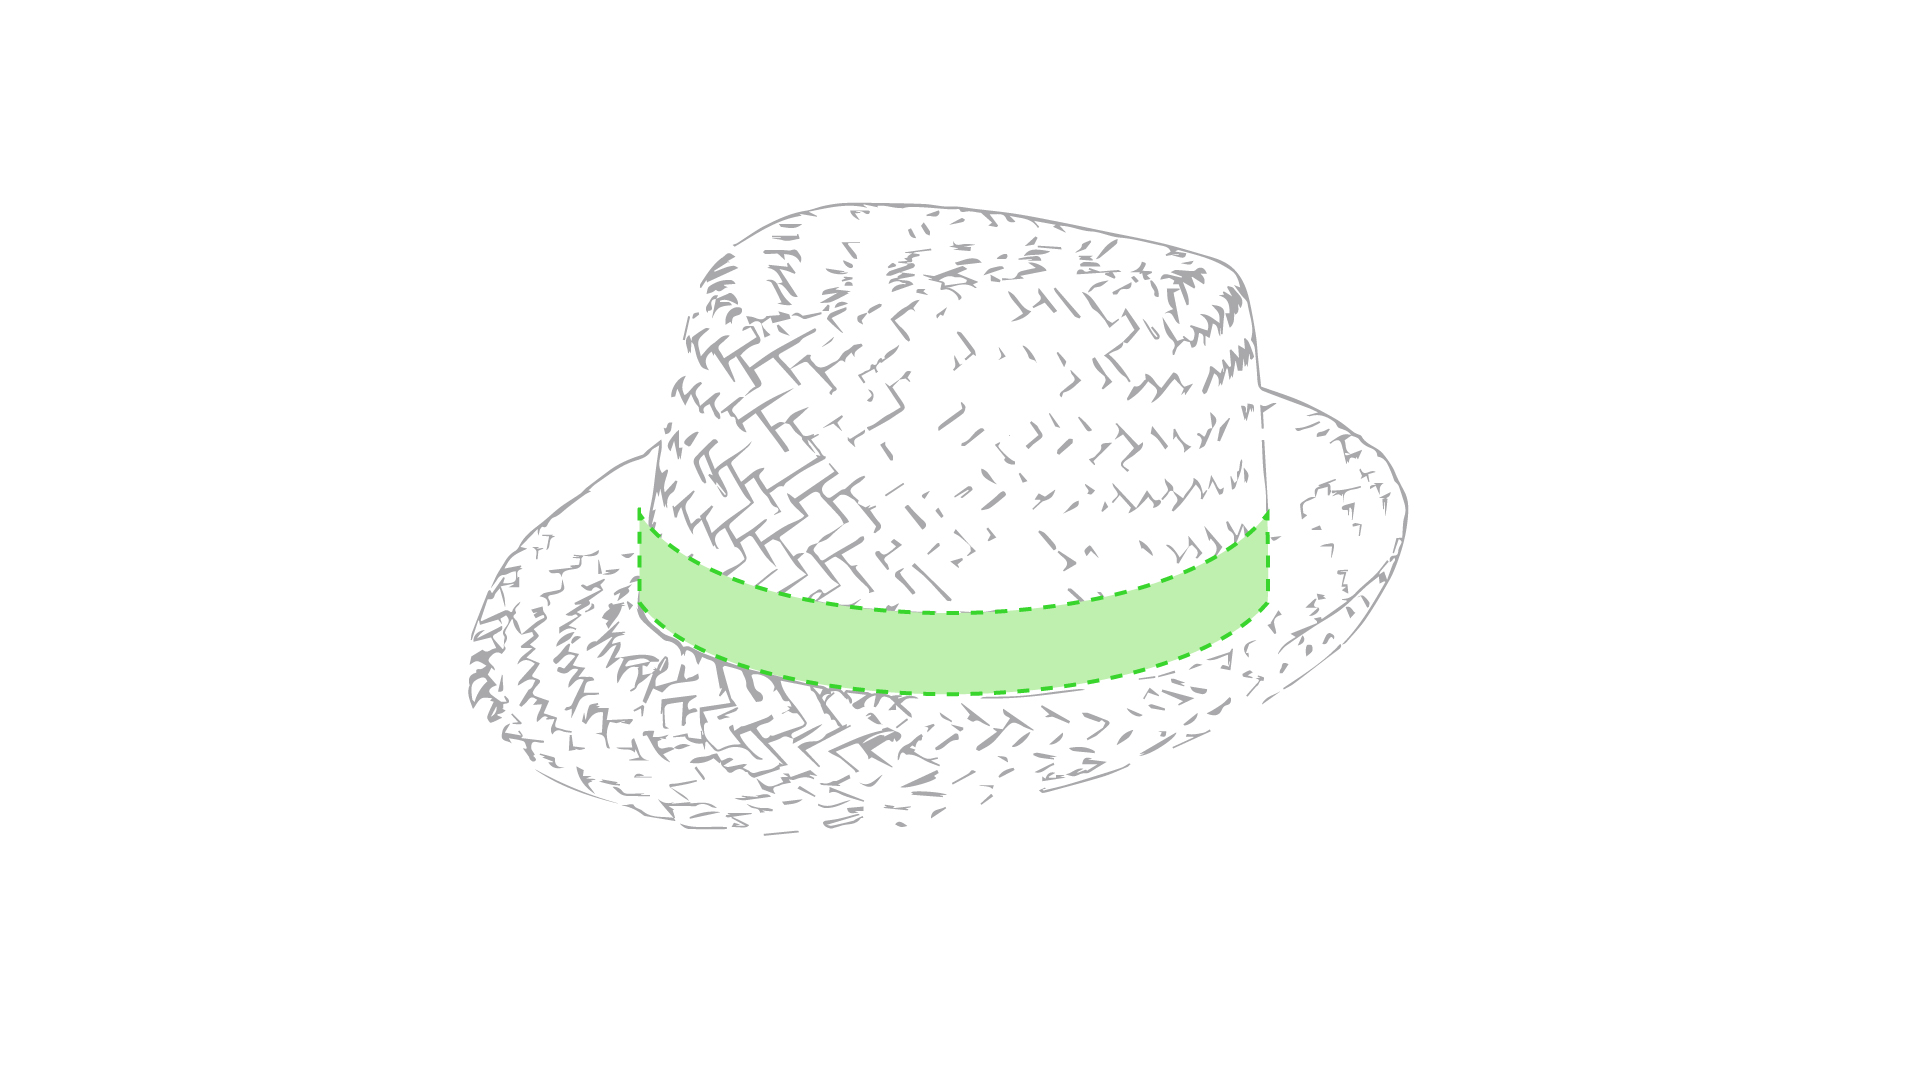 Sombrero Zelio